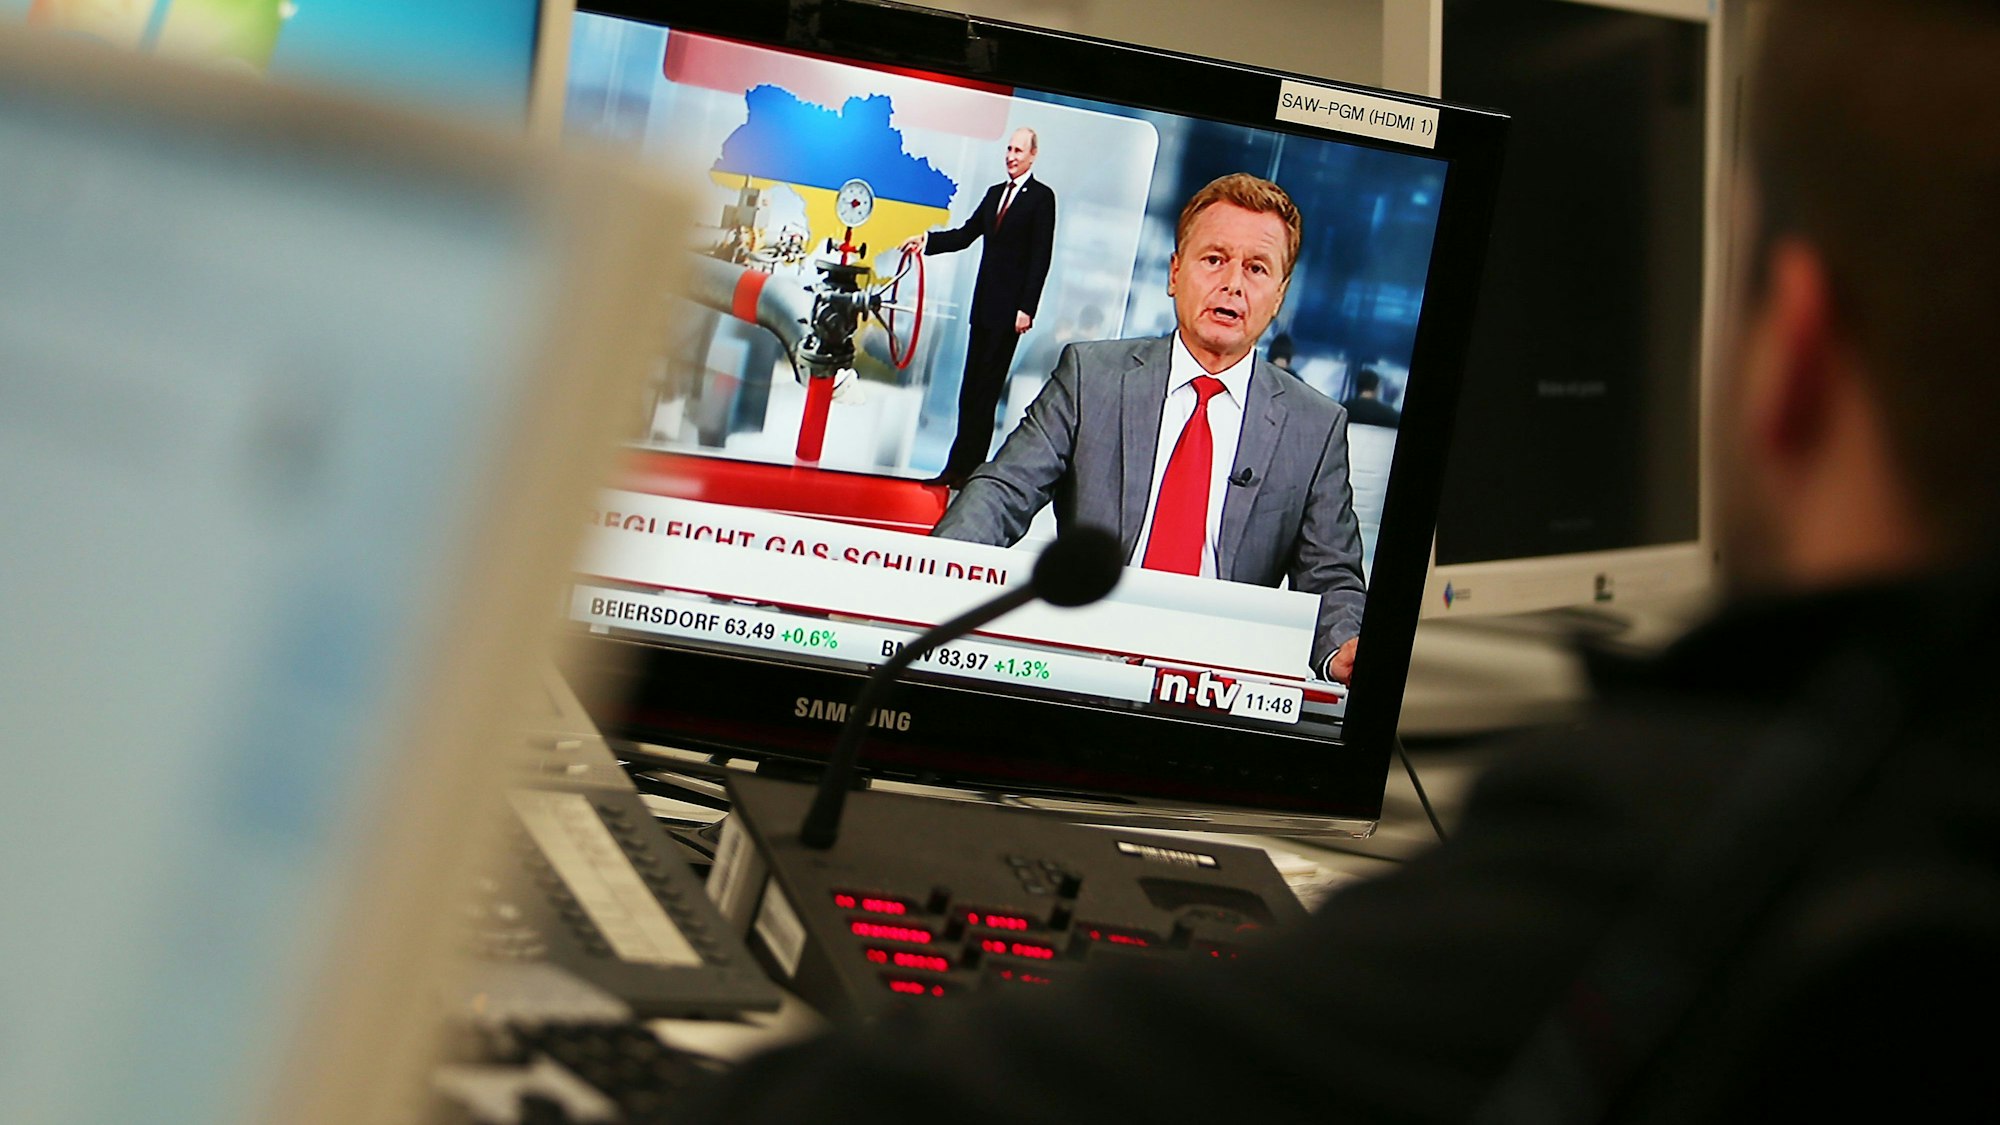 Der TV-Moderator Raimund Brichta ist am 5. November 2014 in Köln (Nordrhein-Westfalen) im Newsroom des Nachrichten-Senders n-tv auf einem Monitor zu sehen.